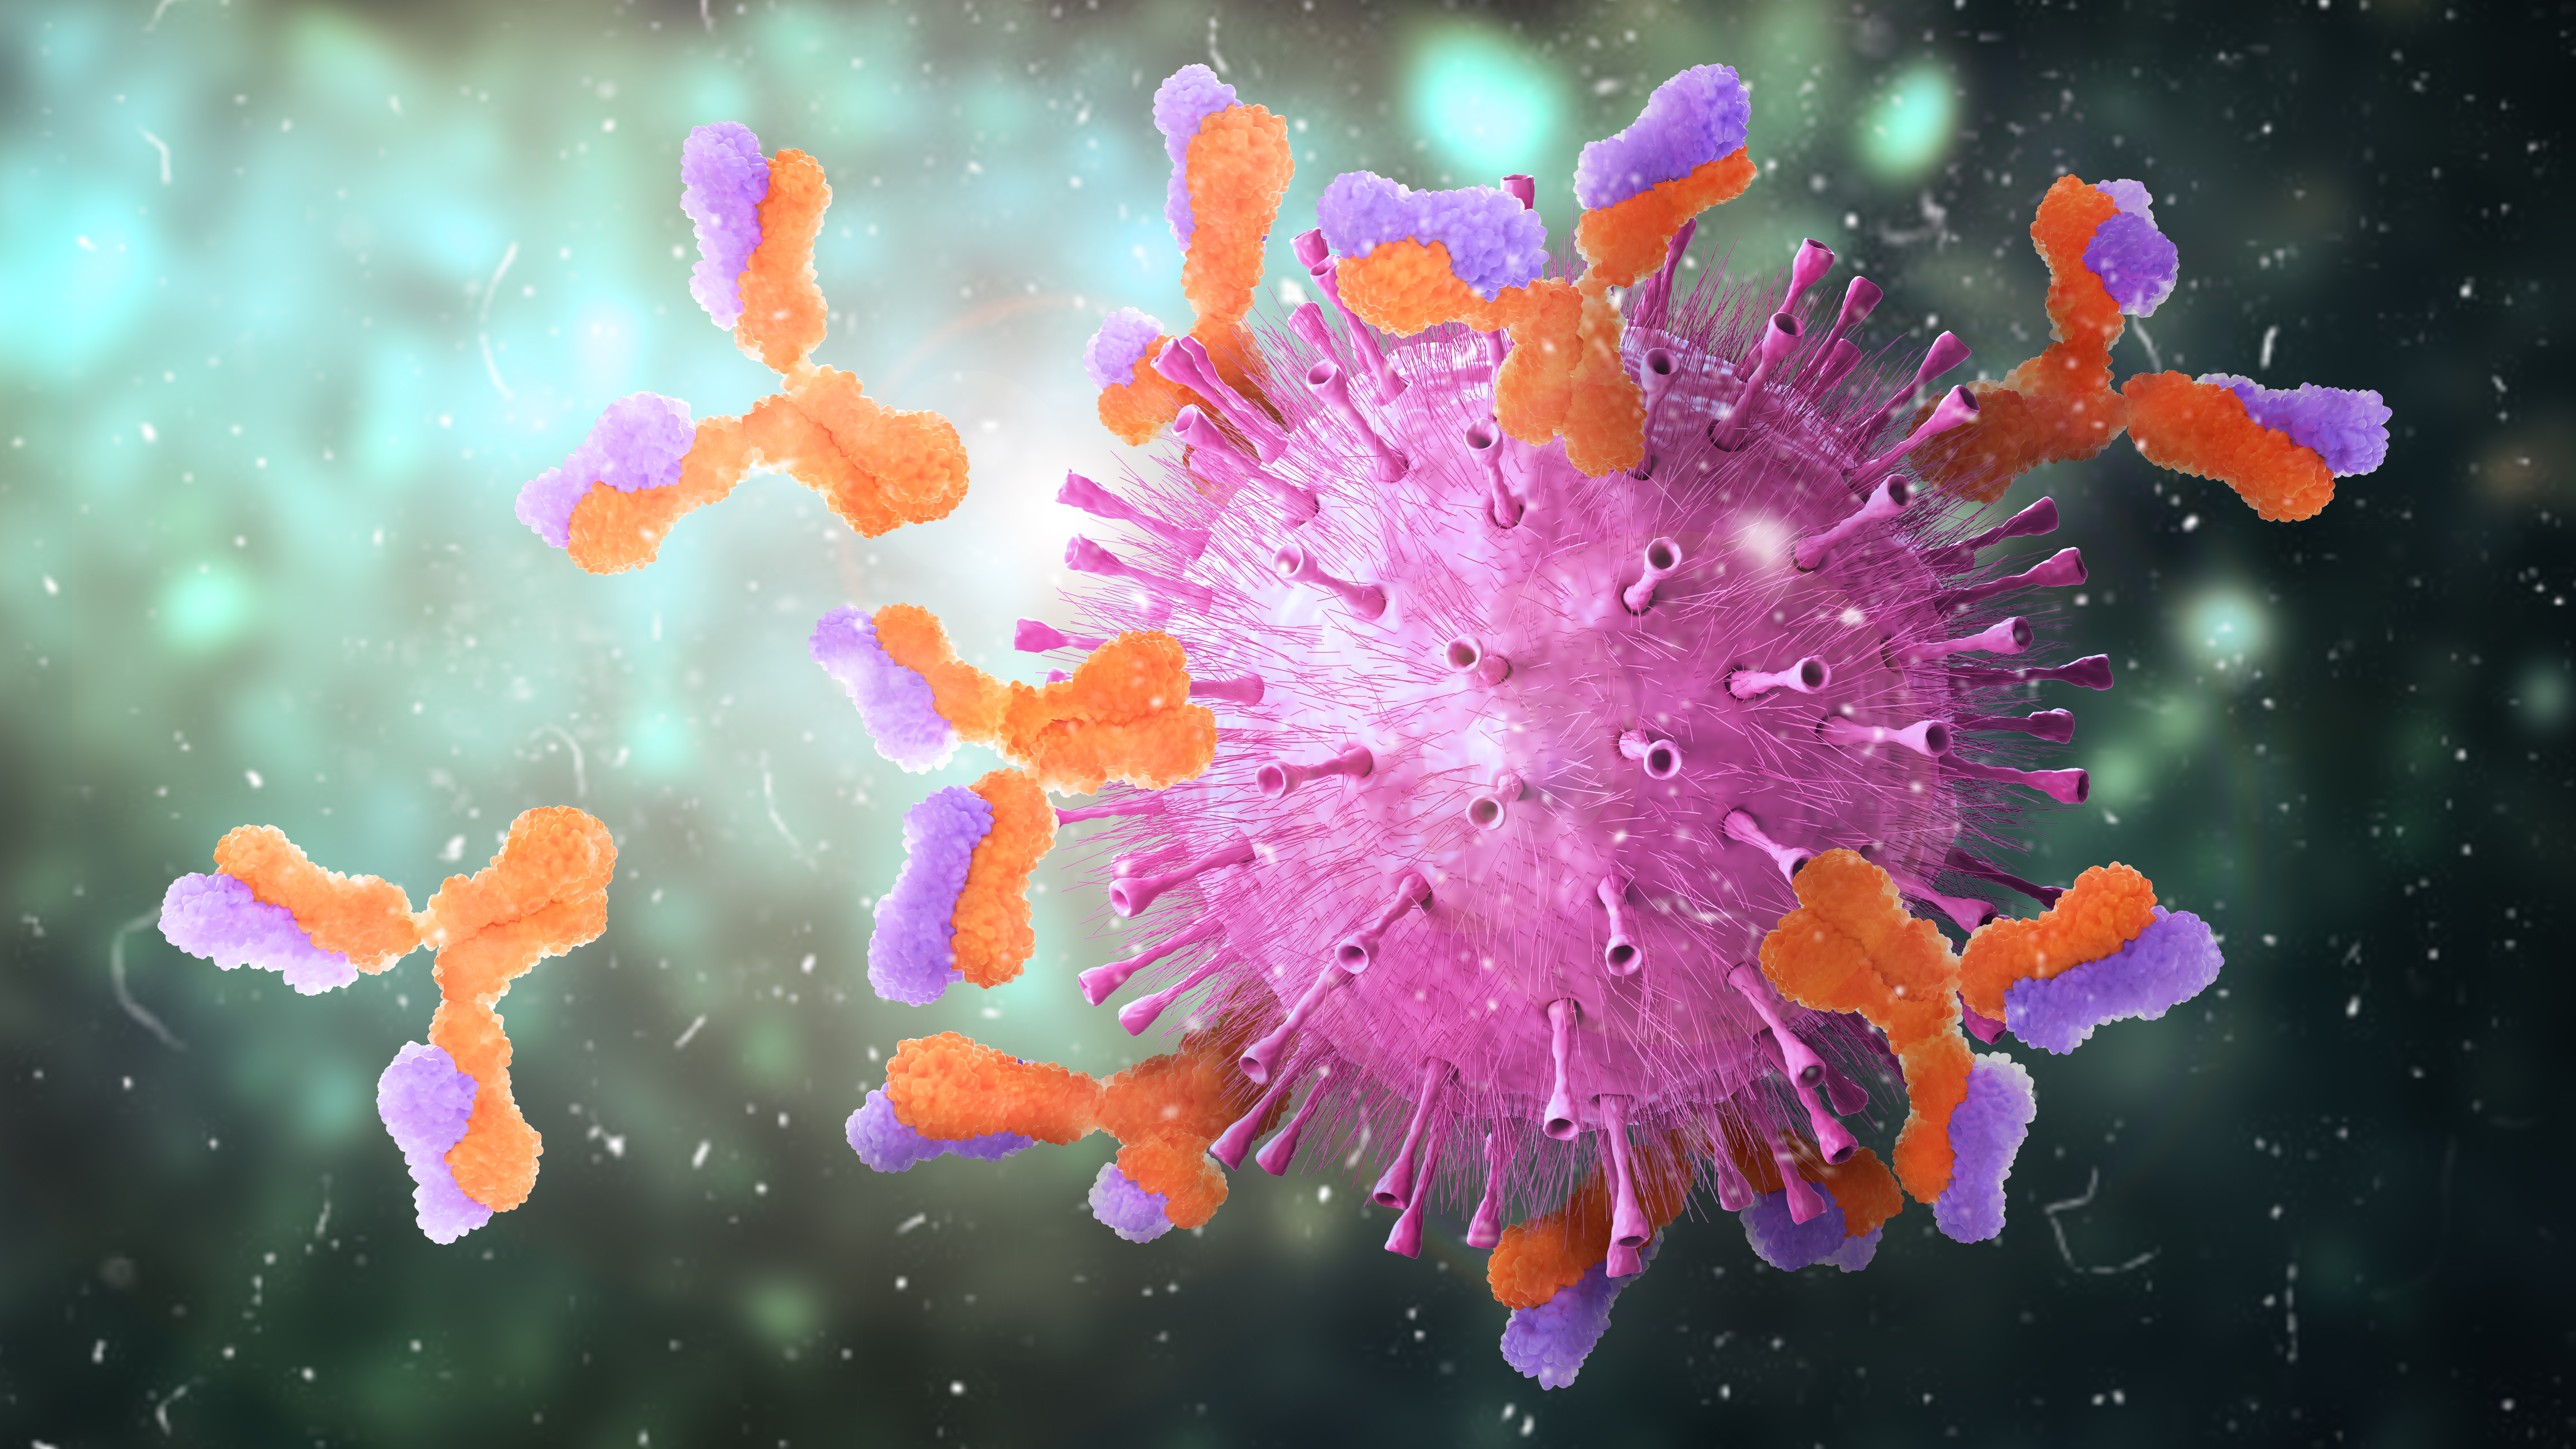 Les anticorps dirigés contre le SARS-CoV-2 témoignent d'une infection passée. © vipman4, Adobe Stock